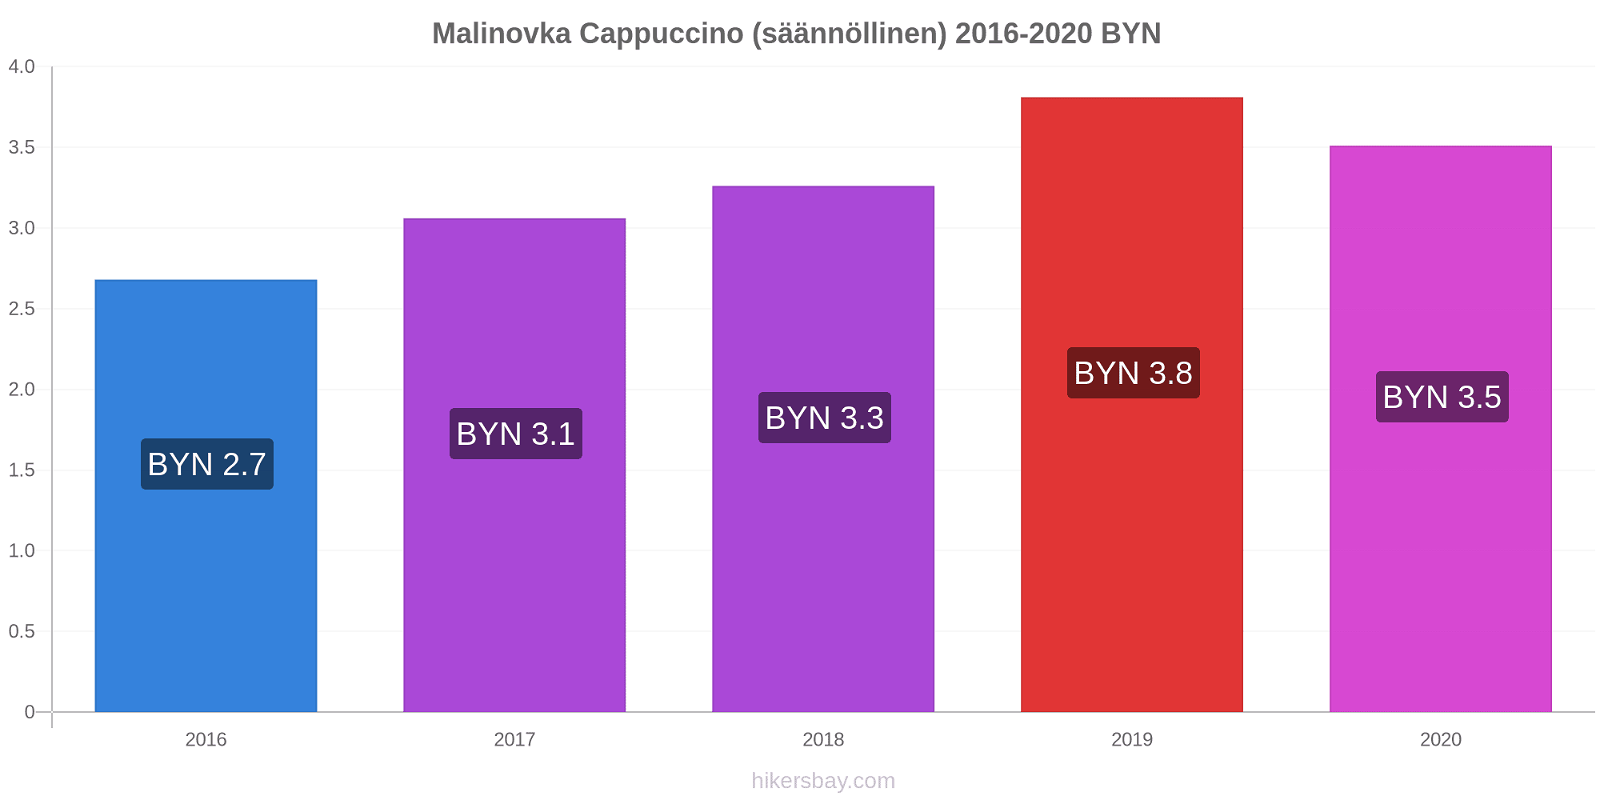 Malinovka hintojen muutokset Cappuccino (säännöllinen) hikersbay.com